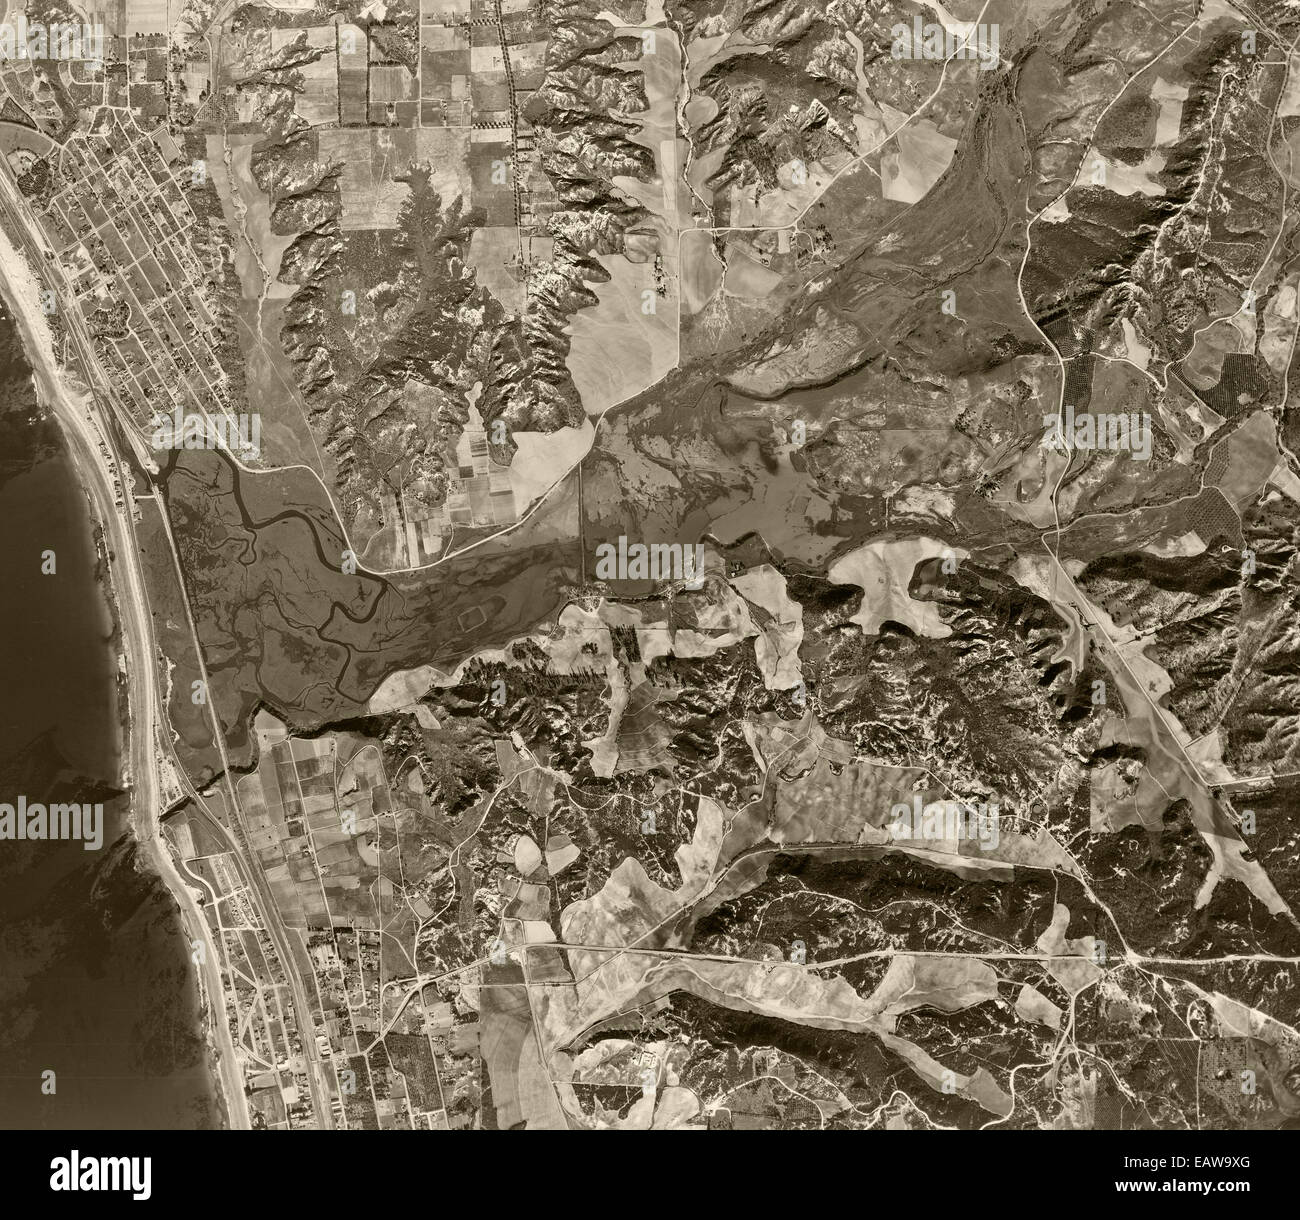 historical aerial photograph Encinitas, Solana Beach, San Diego County, California, 1947 Stock Photo